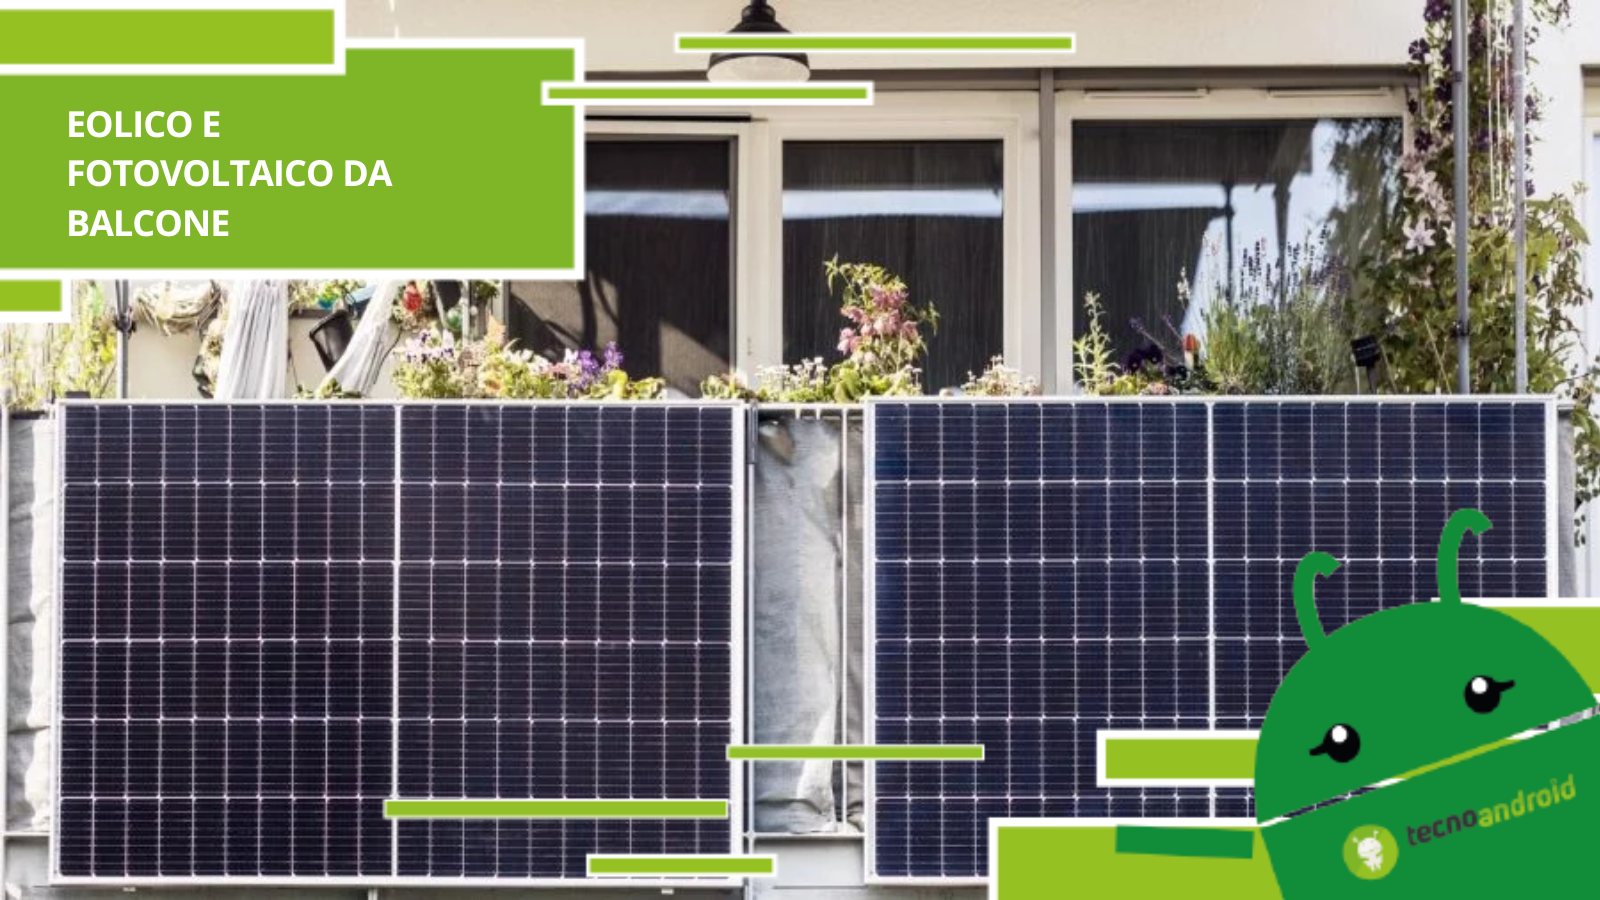 Eolico e fotovoltaico da balcone, la nuova tecnologia ci fa risparmiare sulle bollette